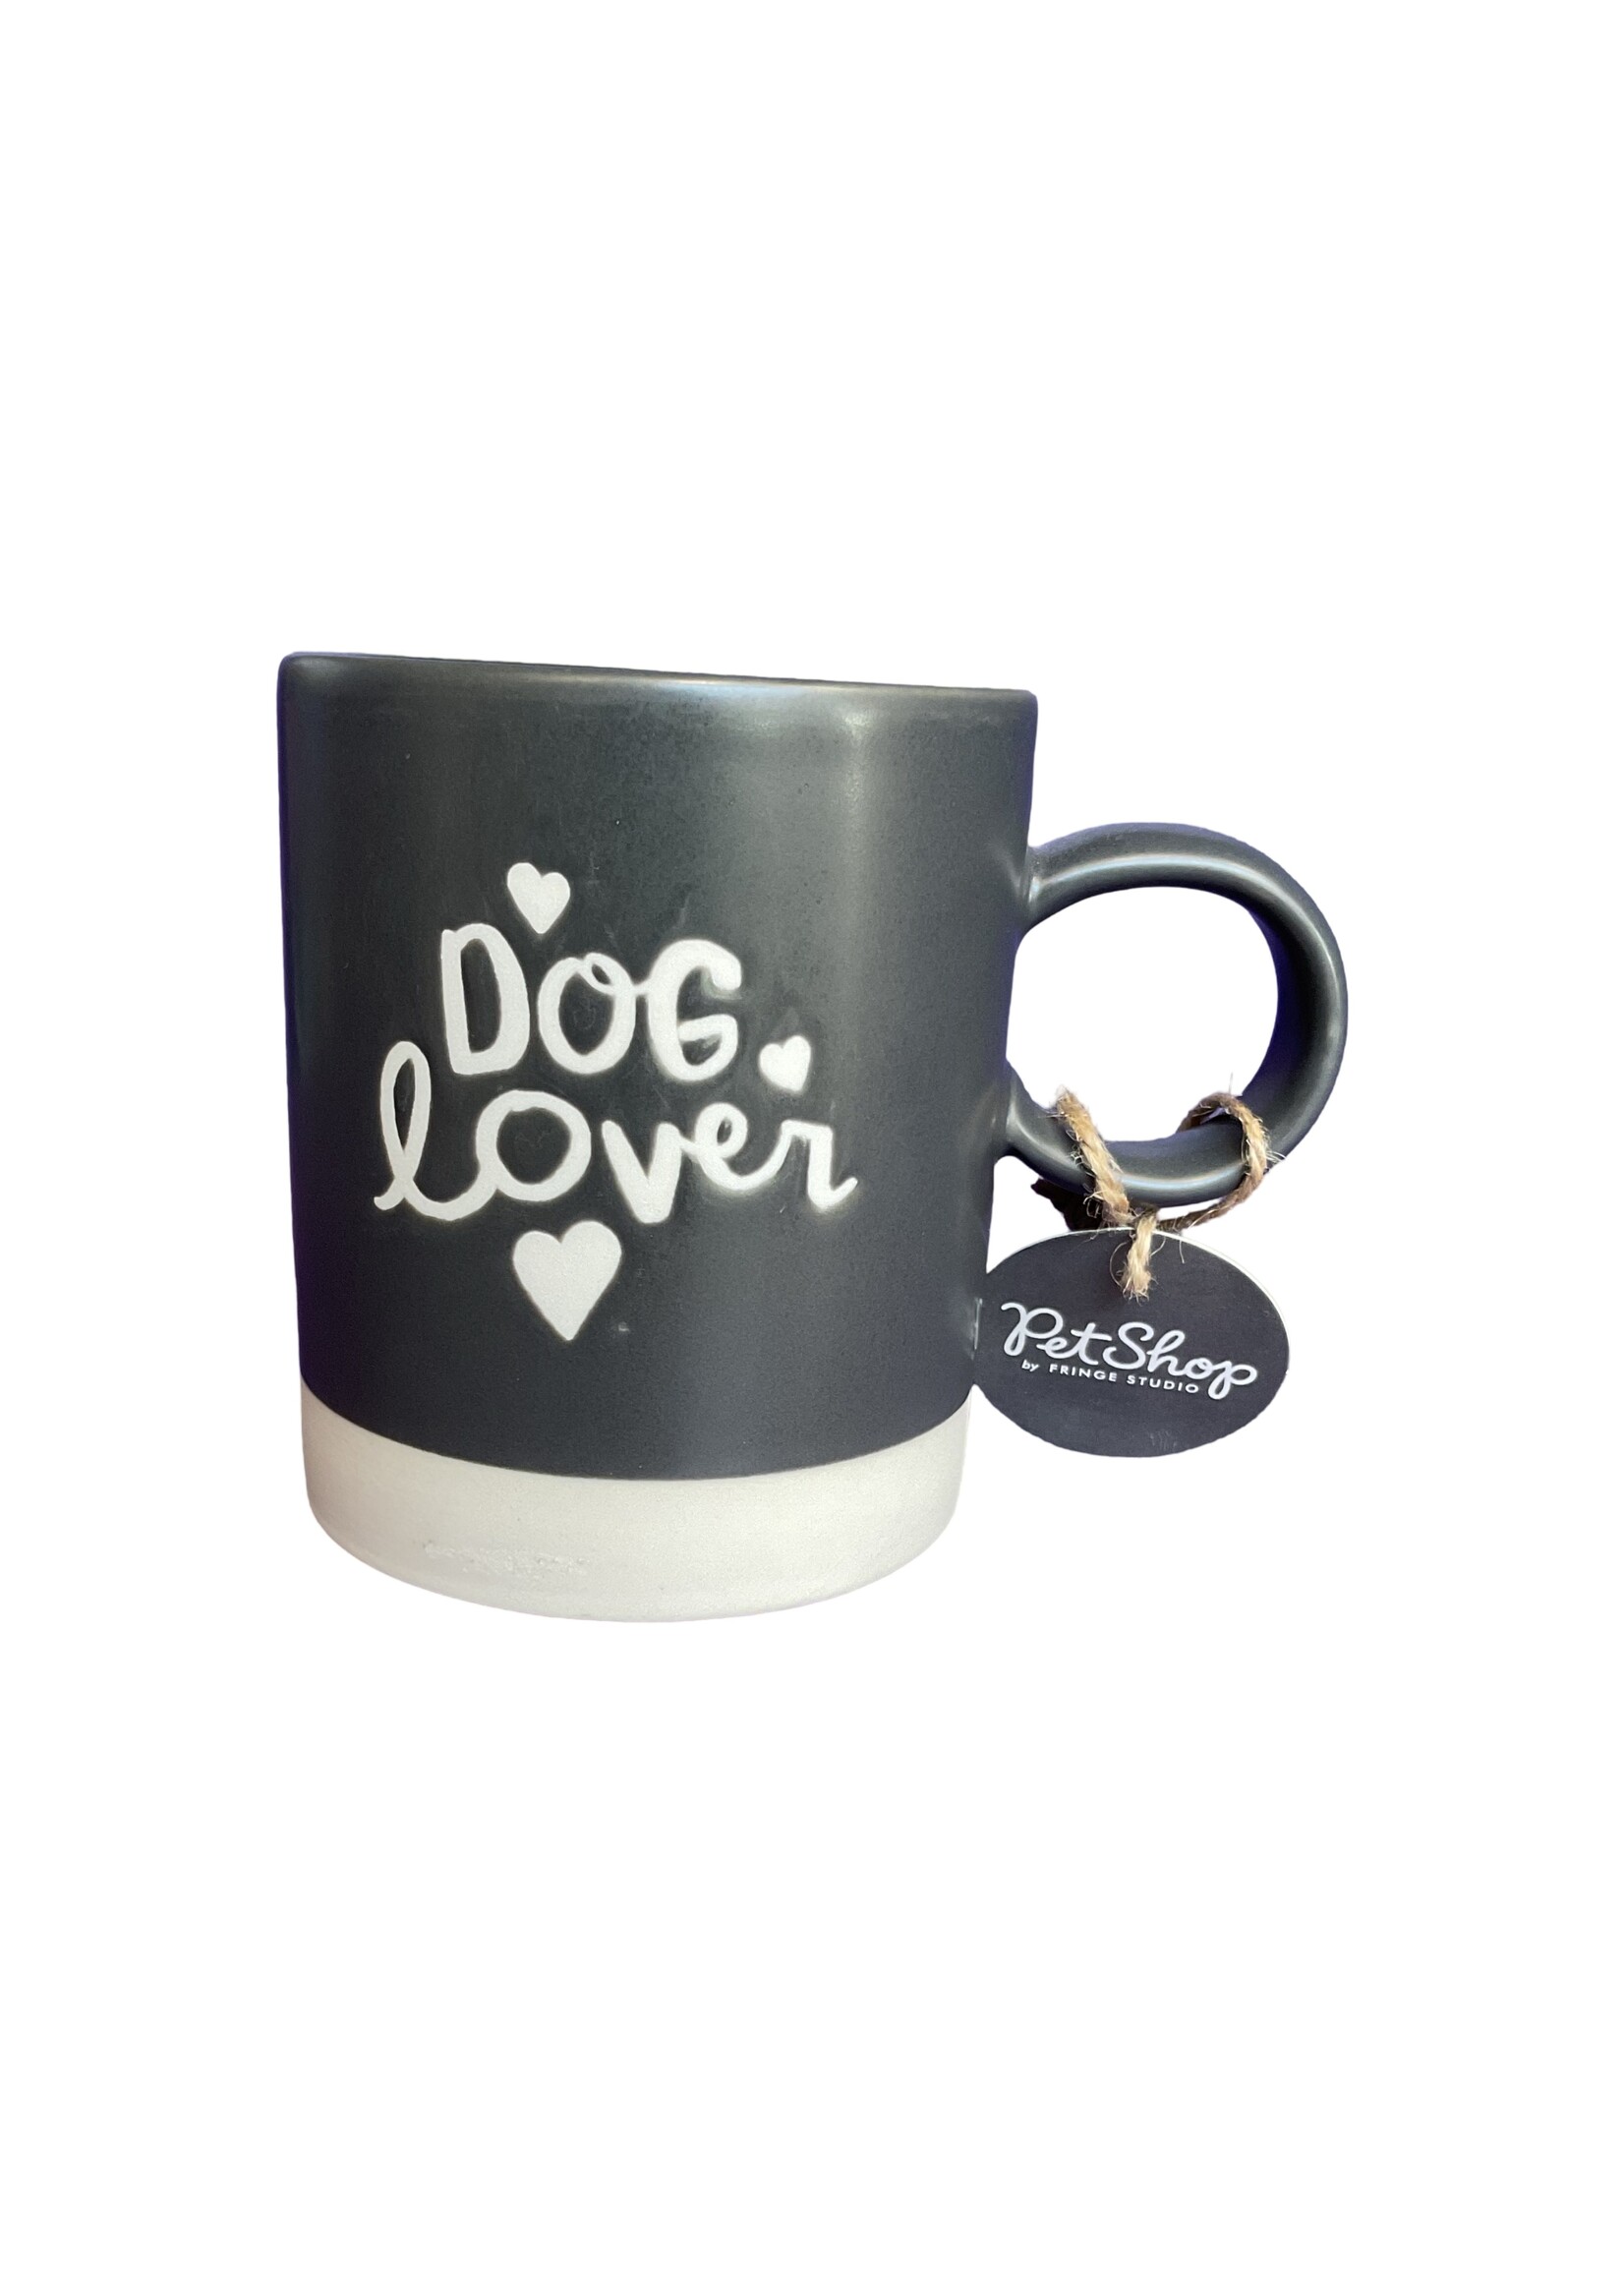 Fringe Dog Lover Saratoga Mug